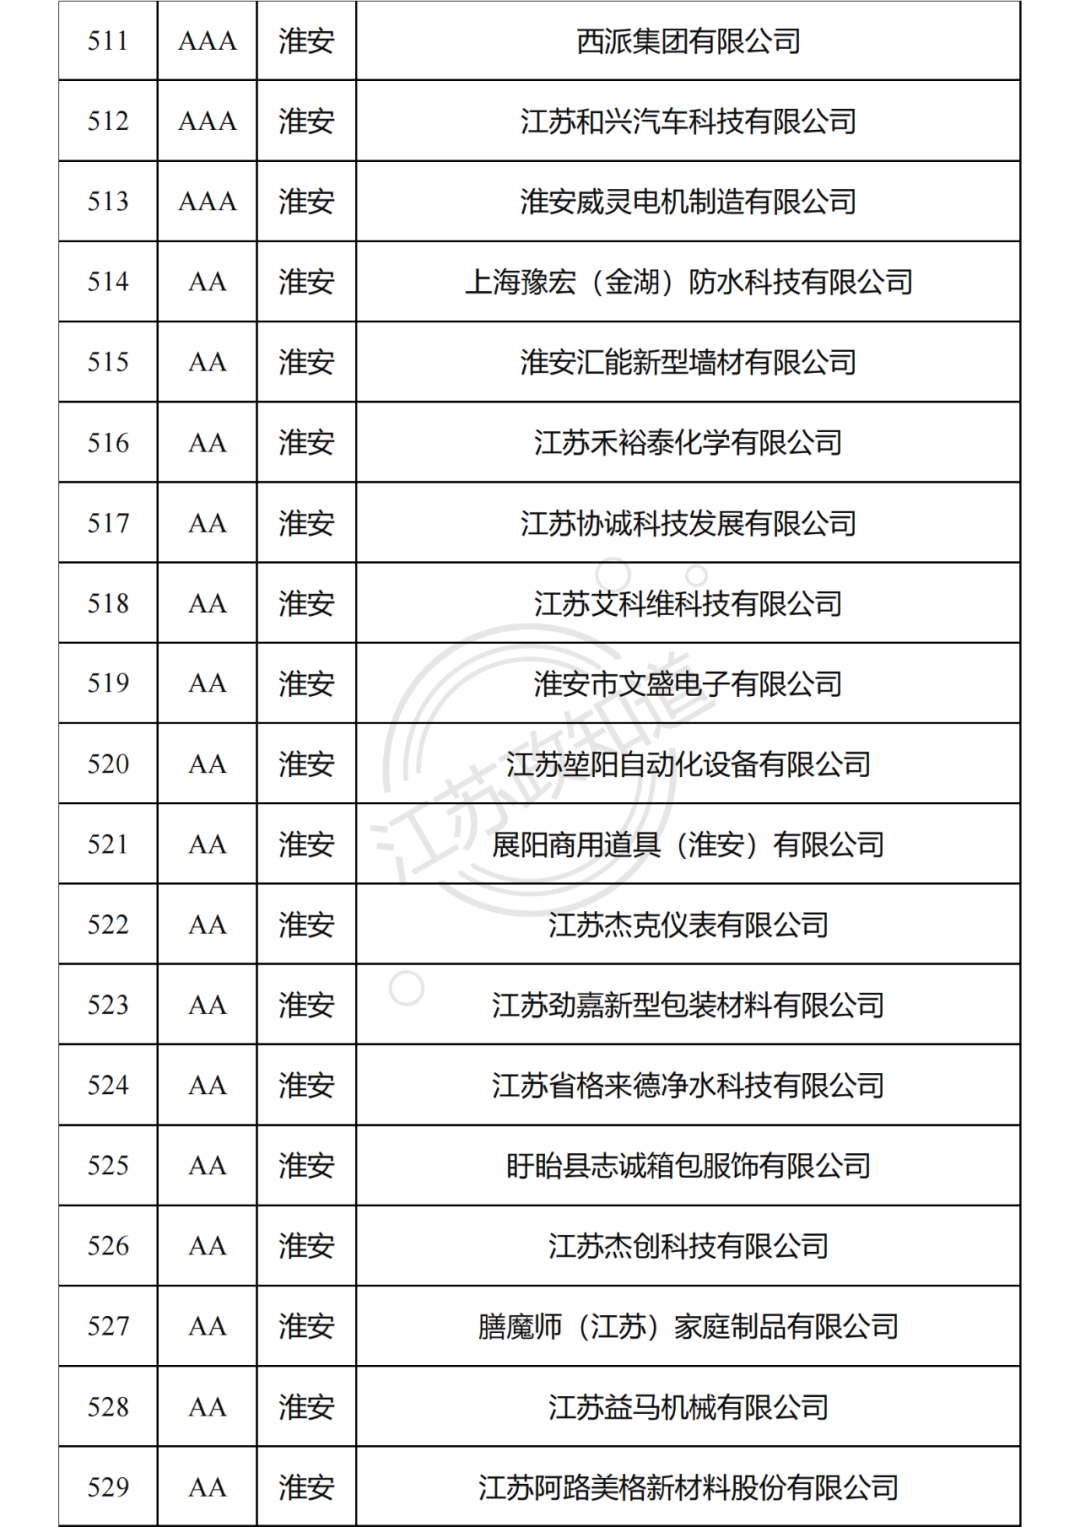 2022年度江苏省两化融合管理体系贯标试点企业培育对象拟认定名单29.png